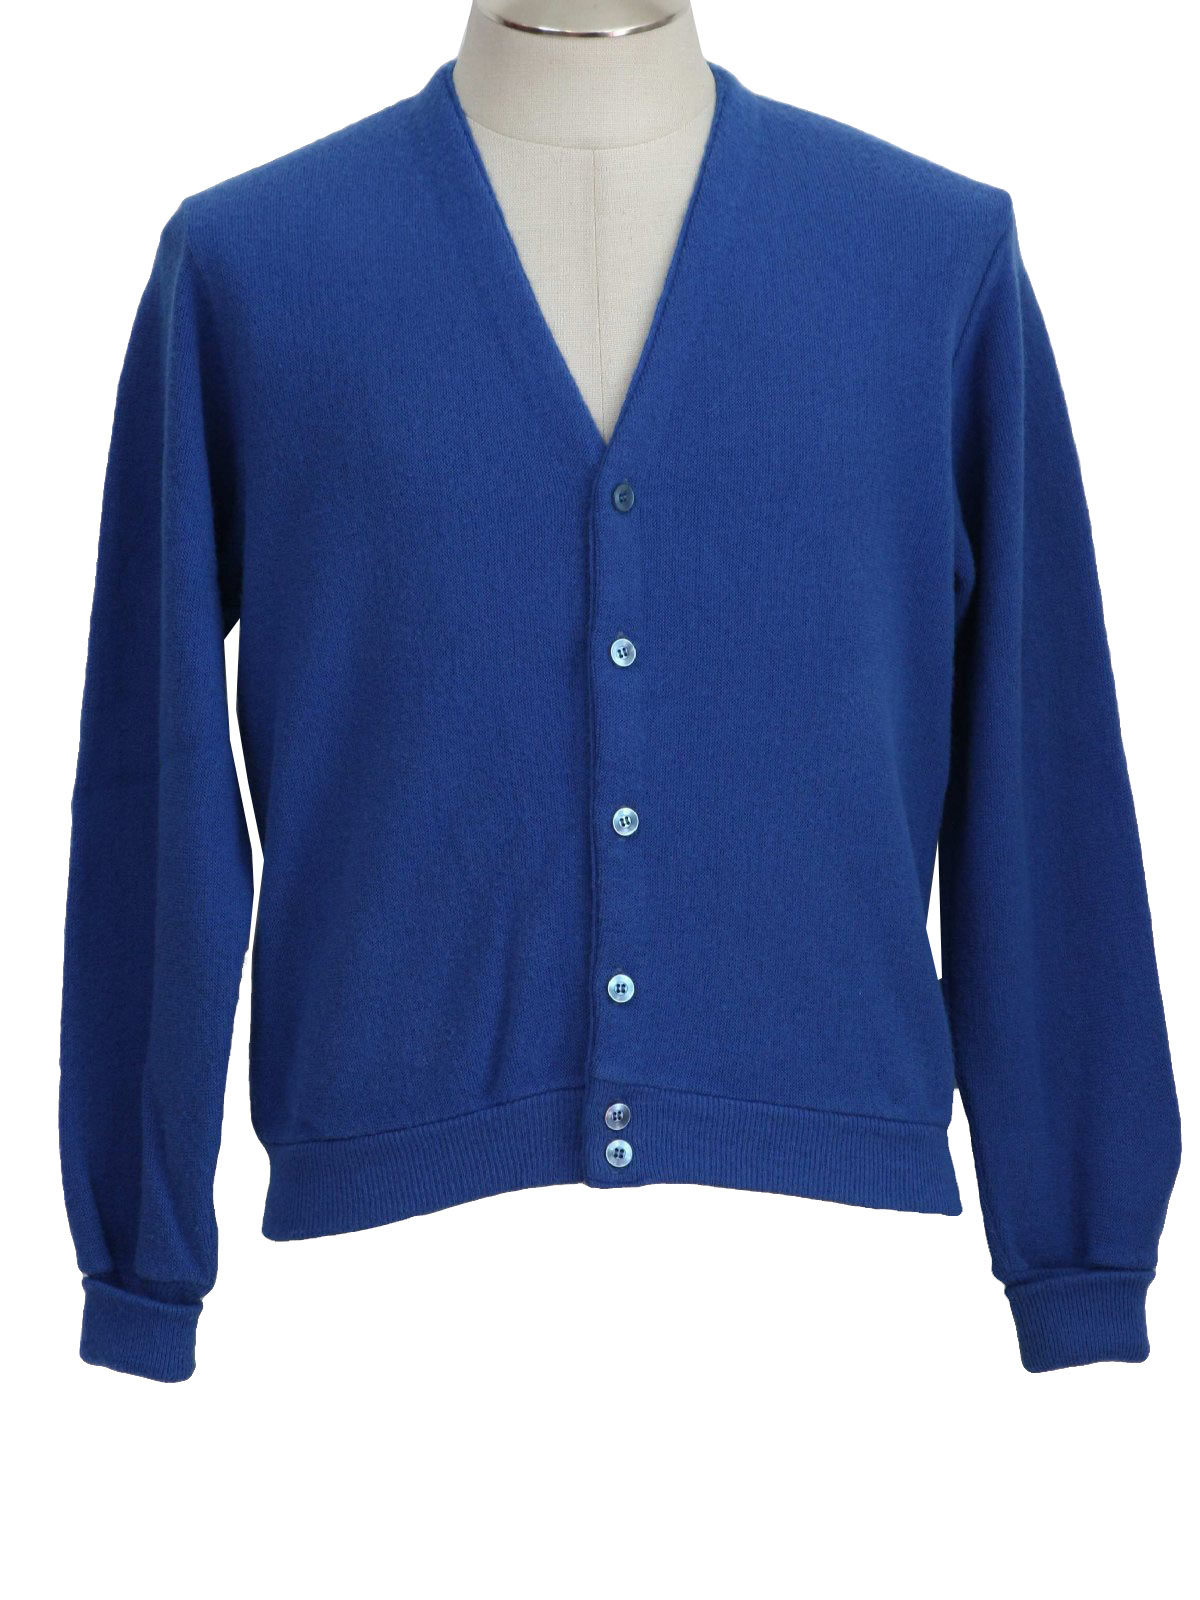 Vintage 1980s Caridgan Sweater: 80s -no label- Mens sapphire blue ...